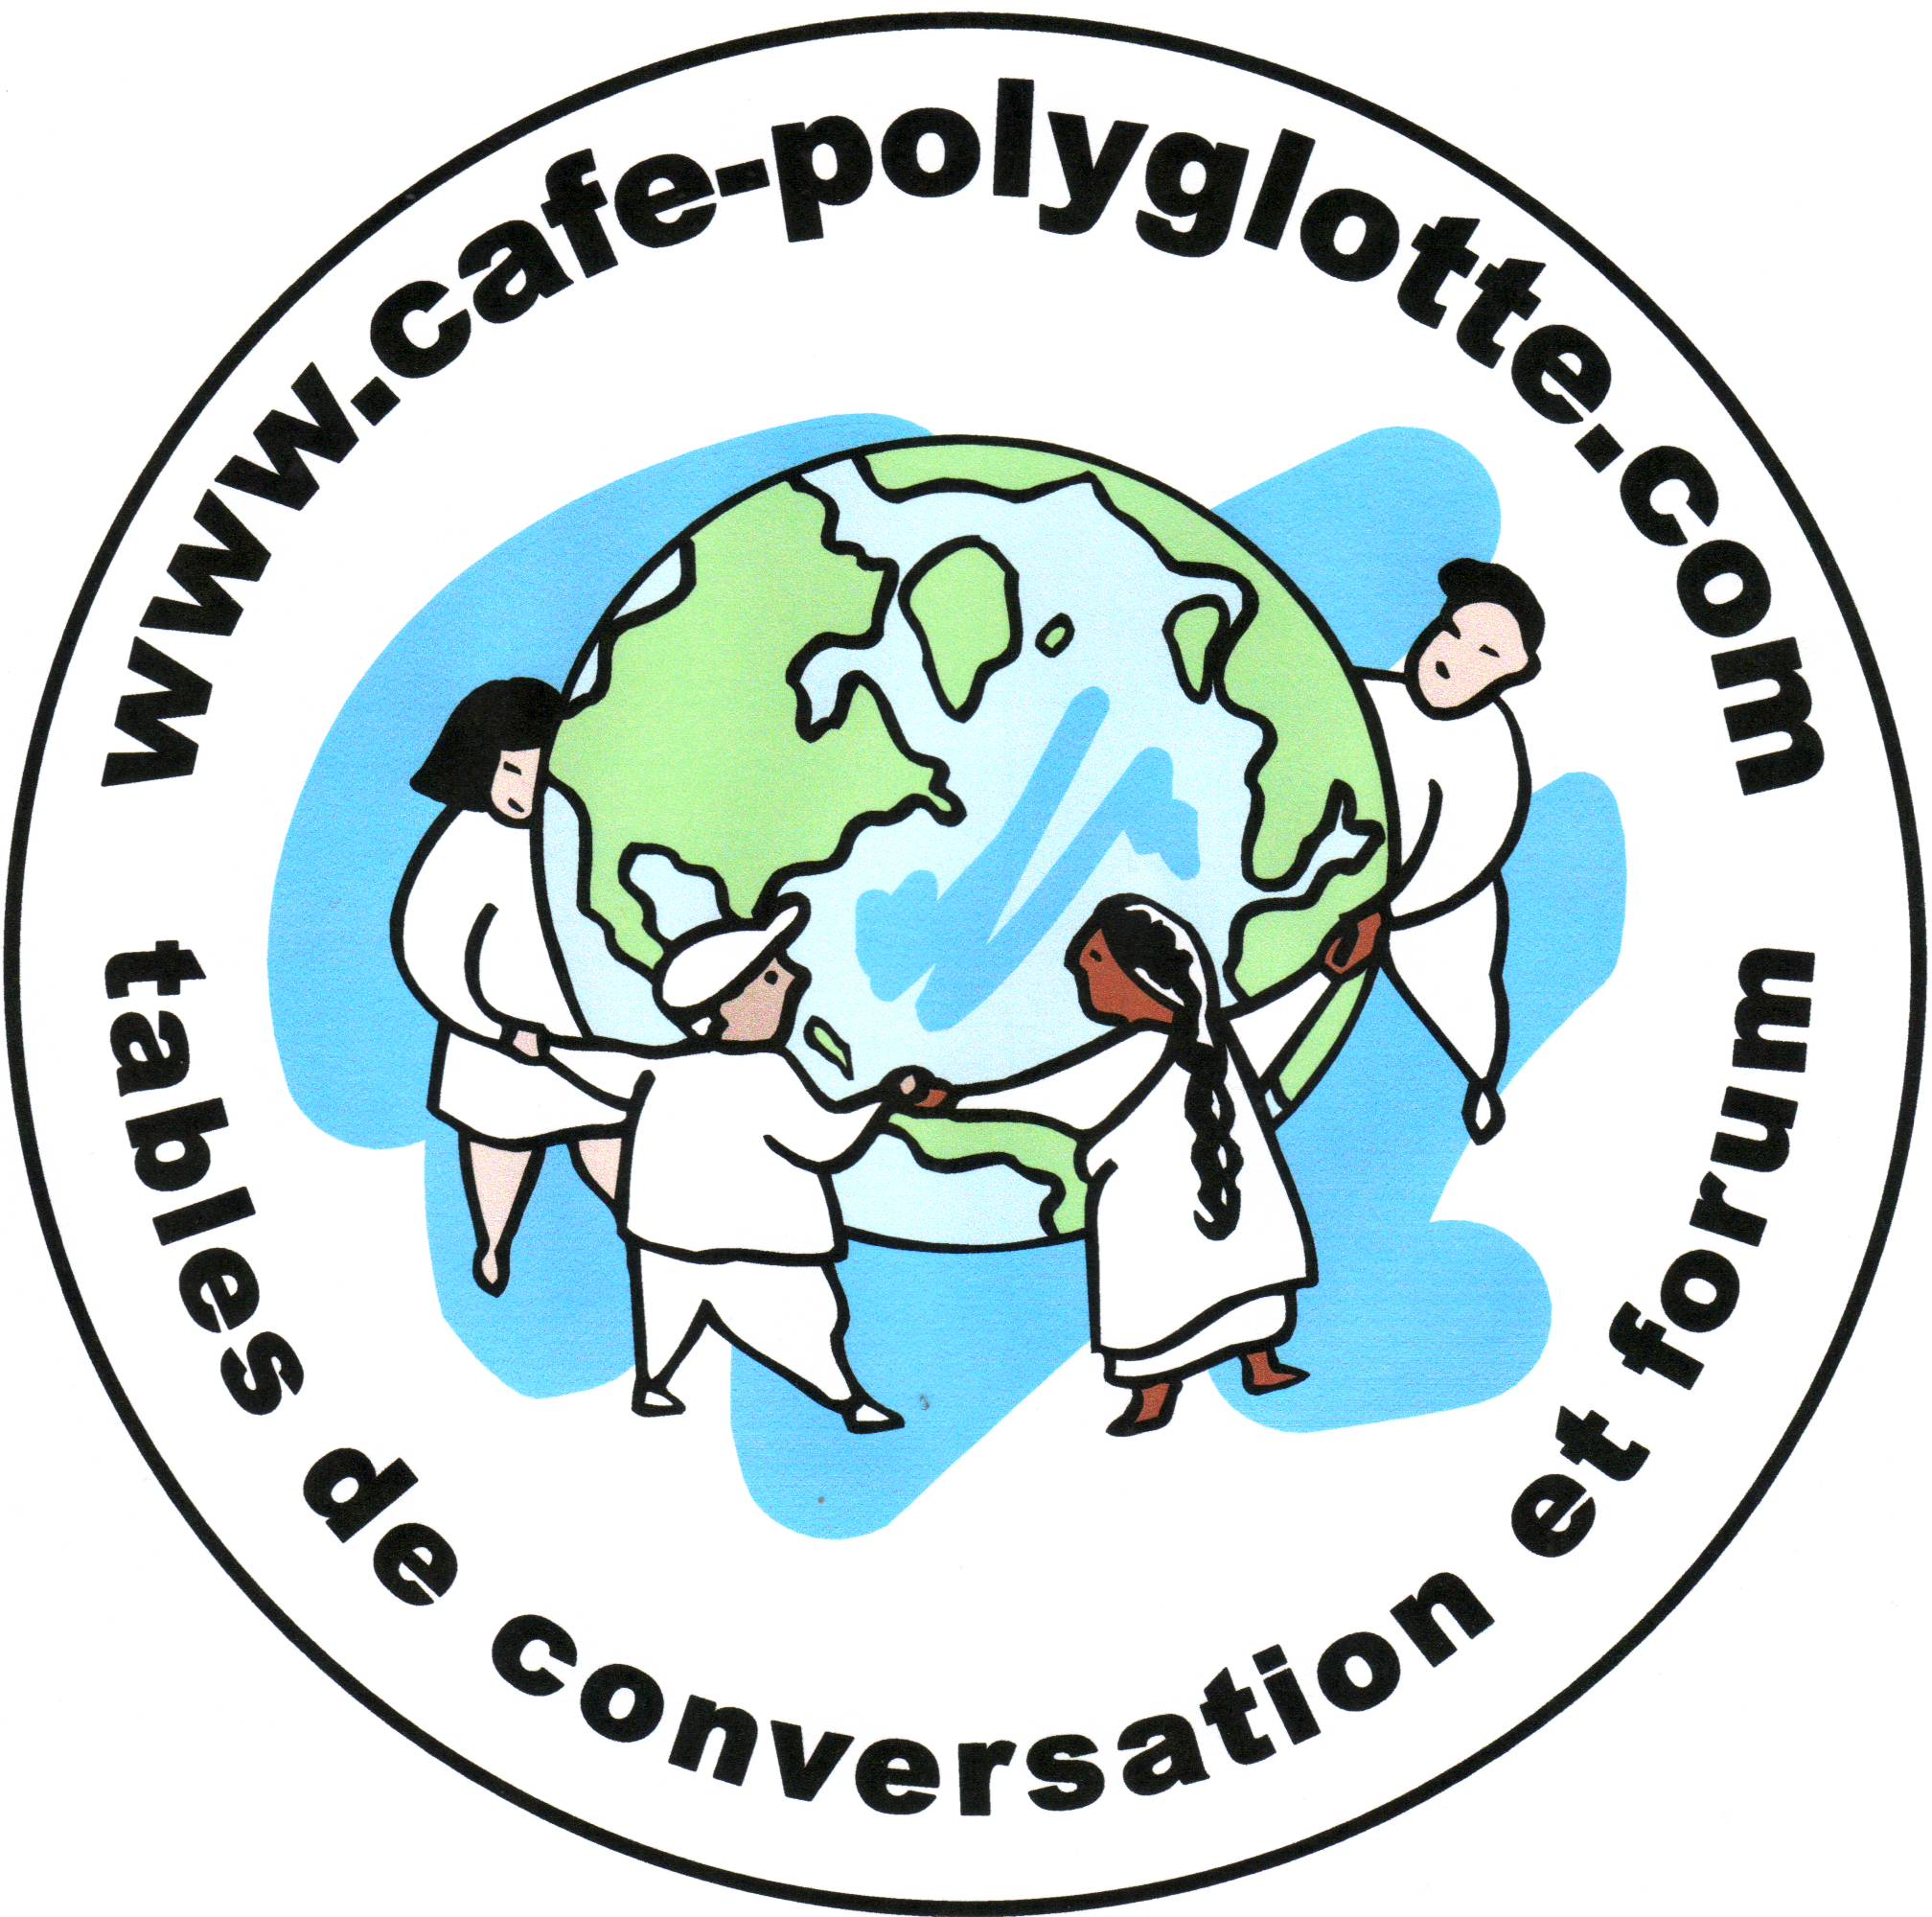 Cafés polyglottes